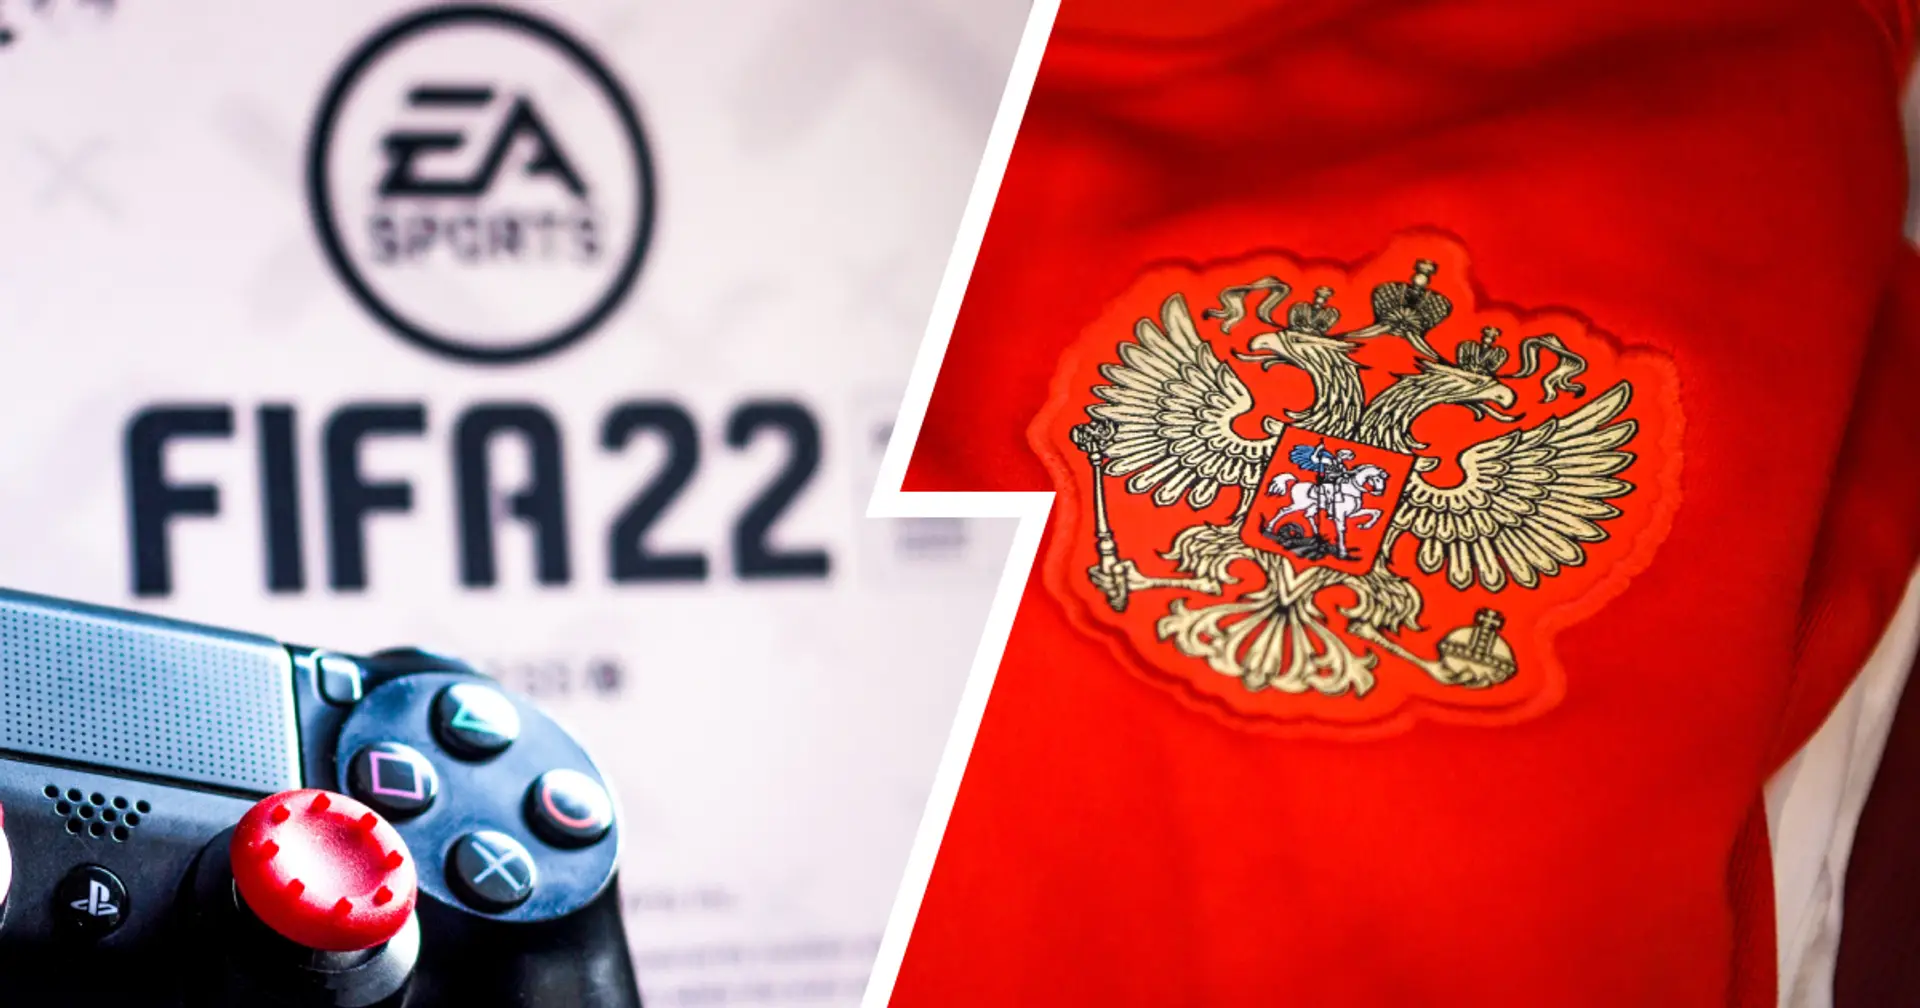 BREAKING: Russische Nationalelf und russische Vereine wurden von EA Sports aus FIFA 22 entfernt